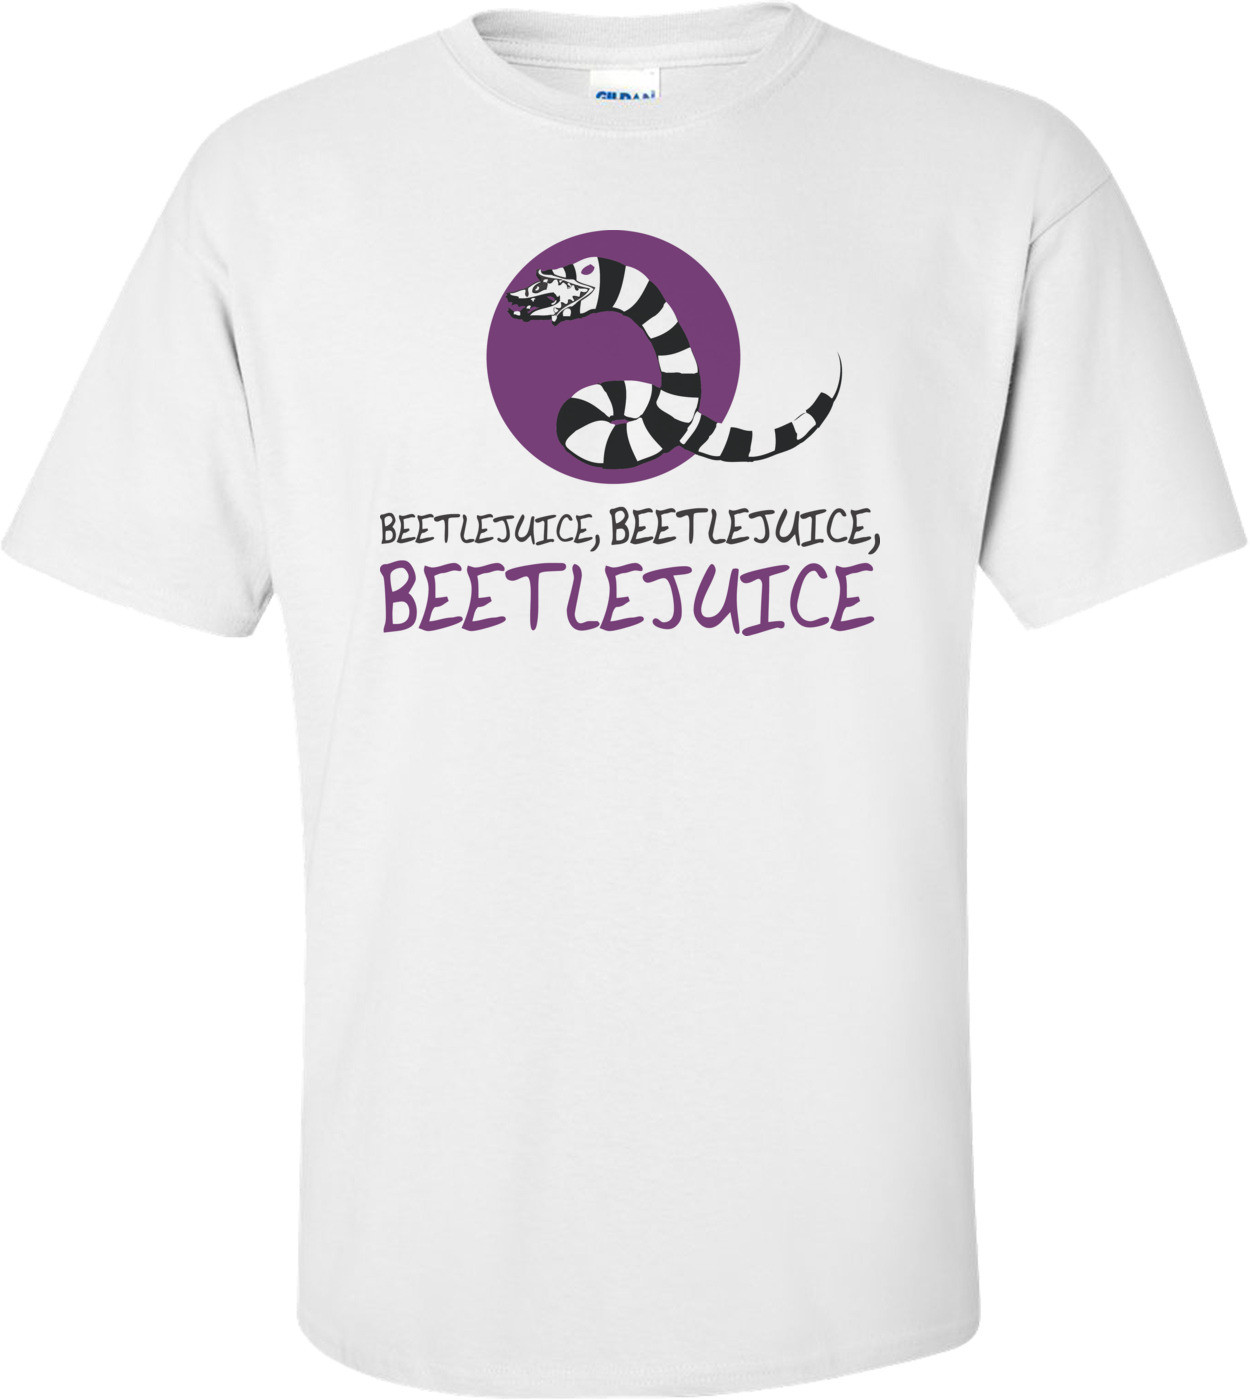 Beetlejuice, Beetlejuice, Beetlejuice T-shirt